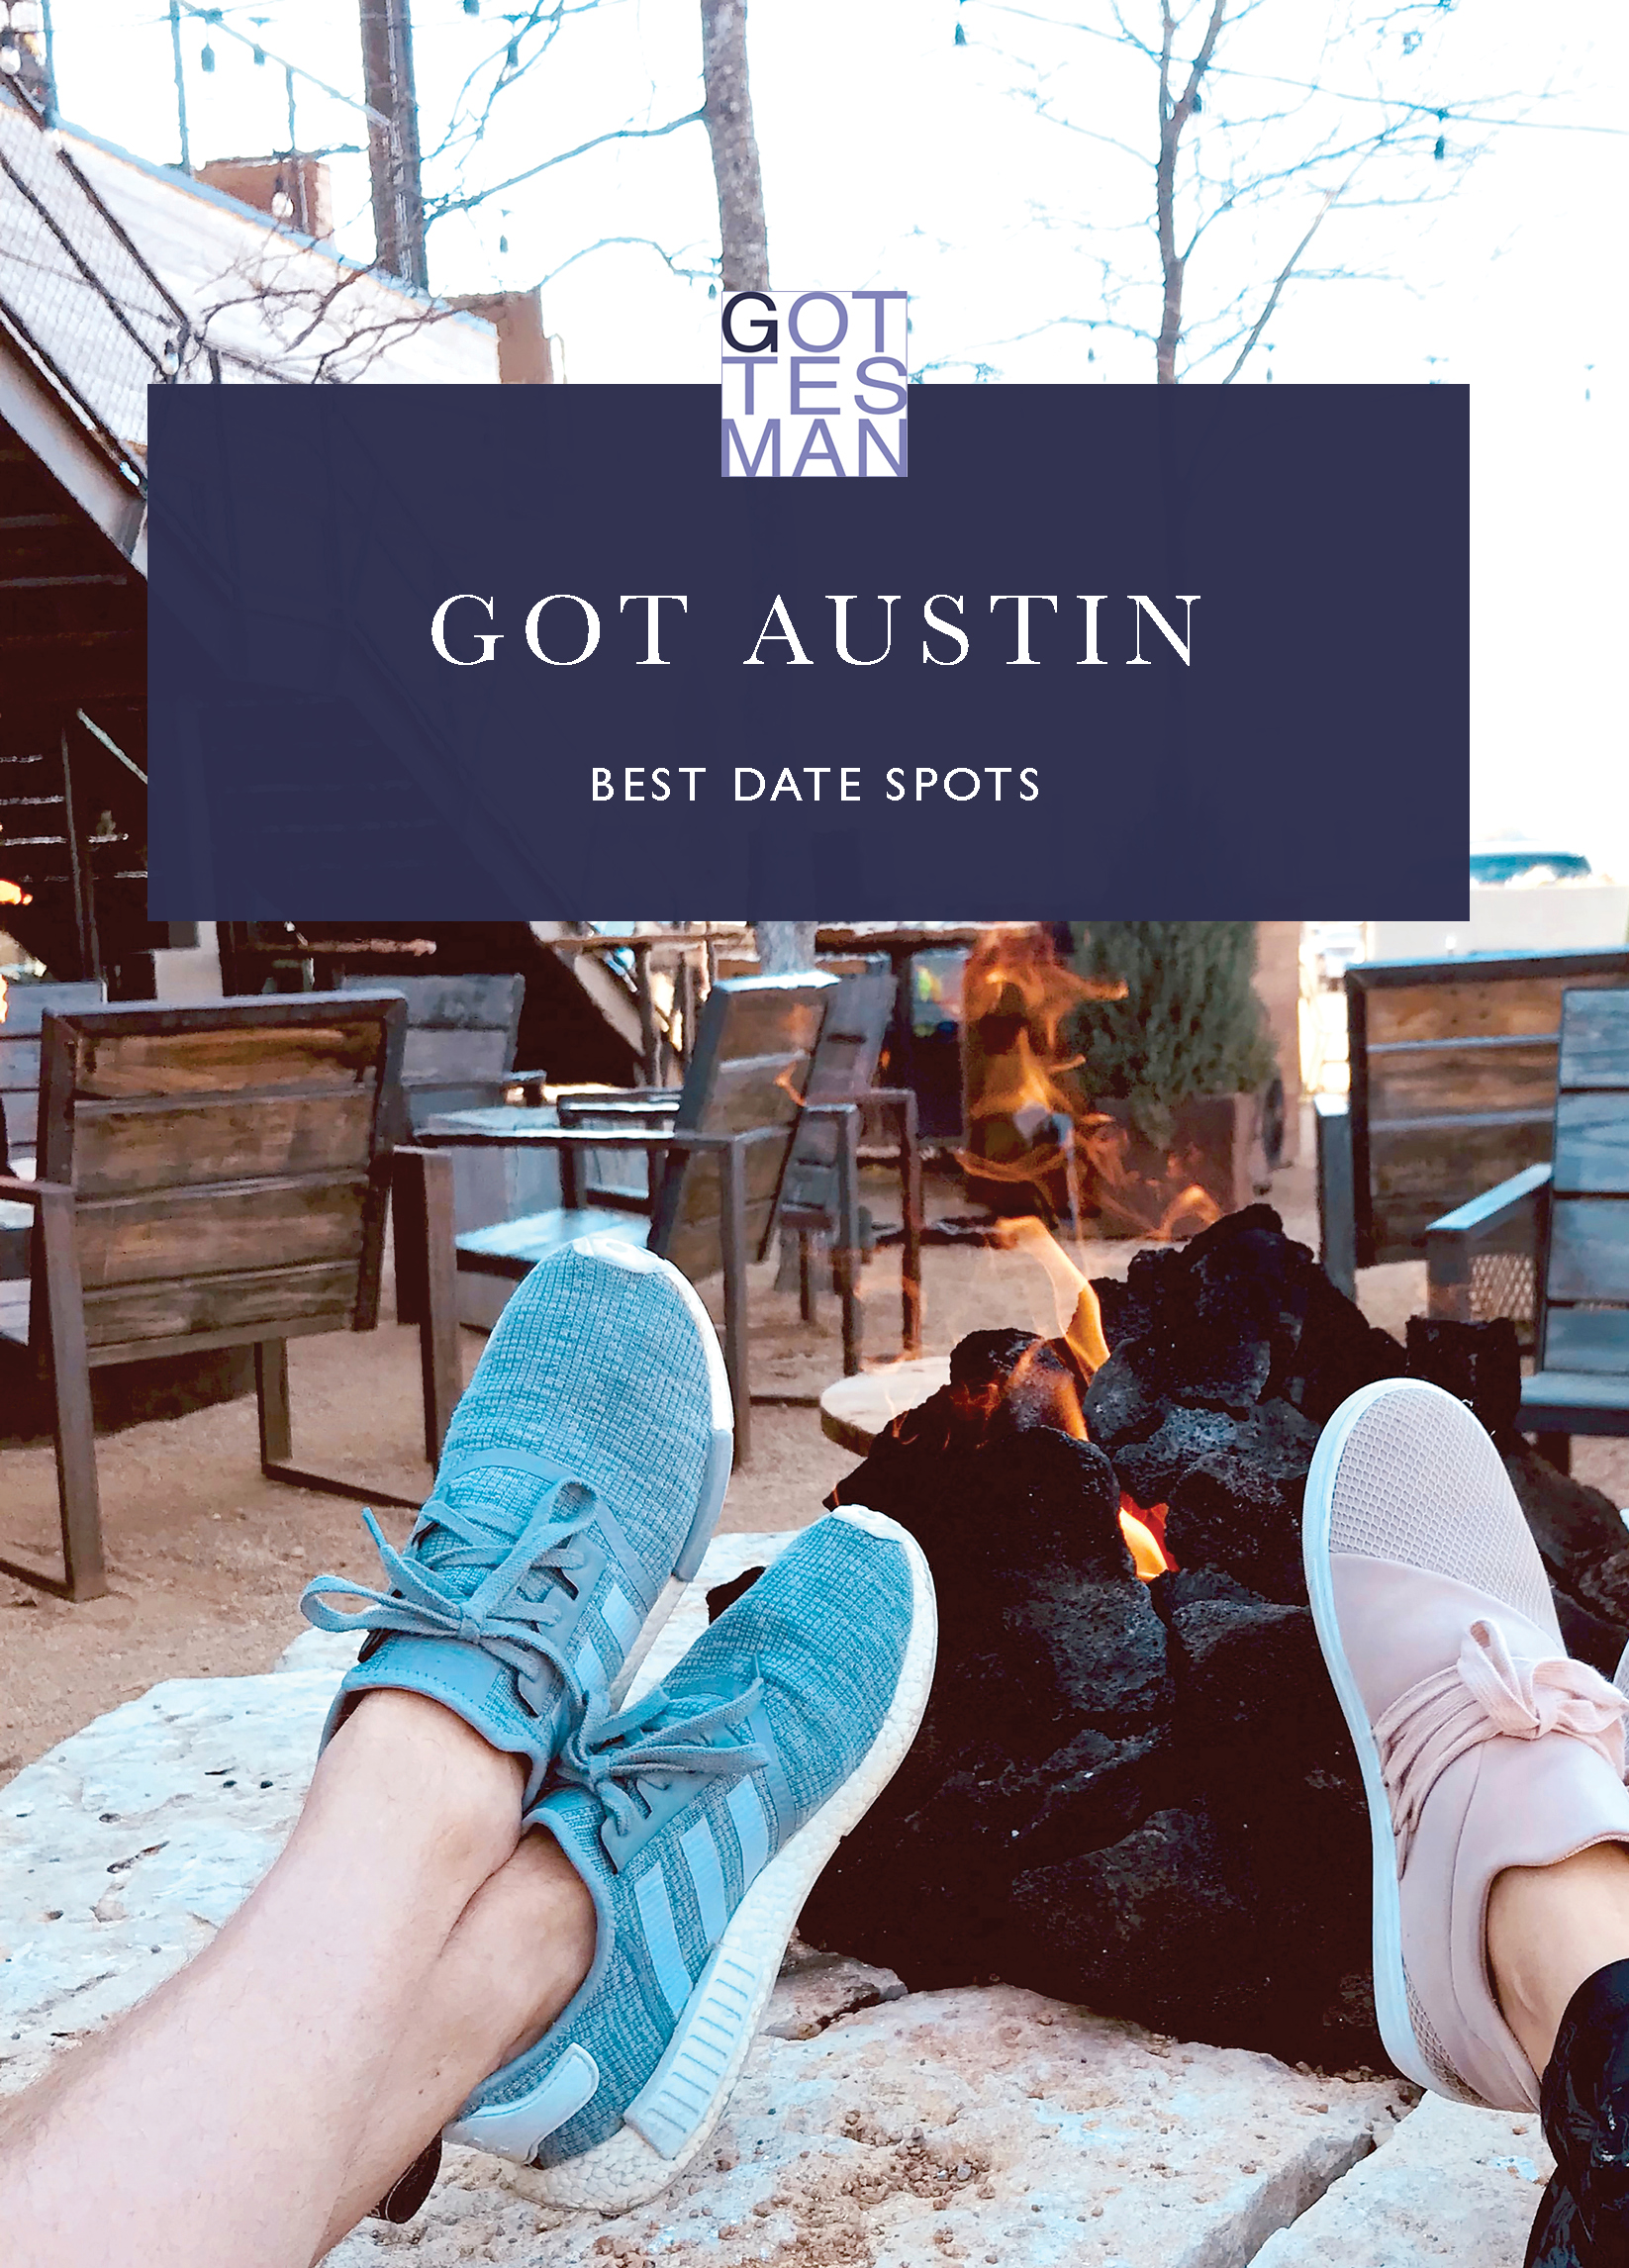 "Got Austin: Best Date Spots"